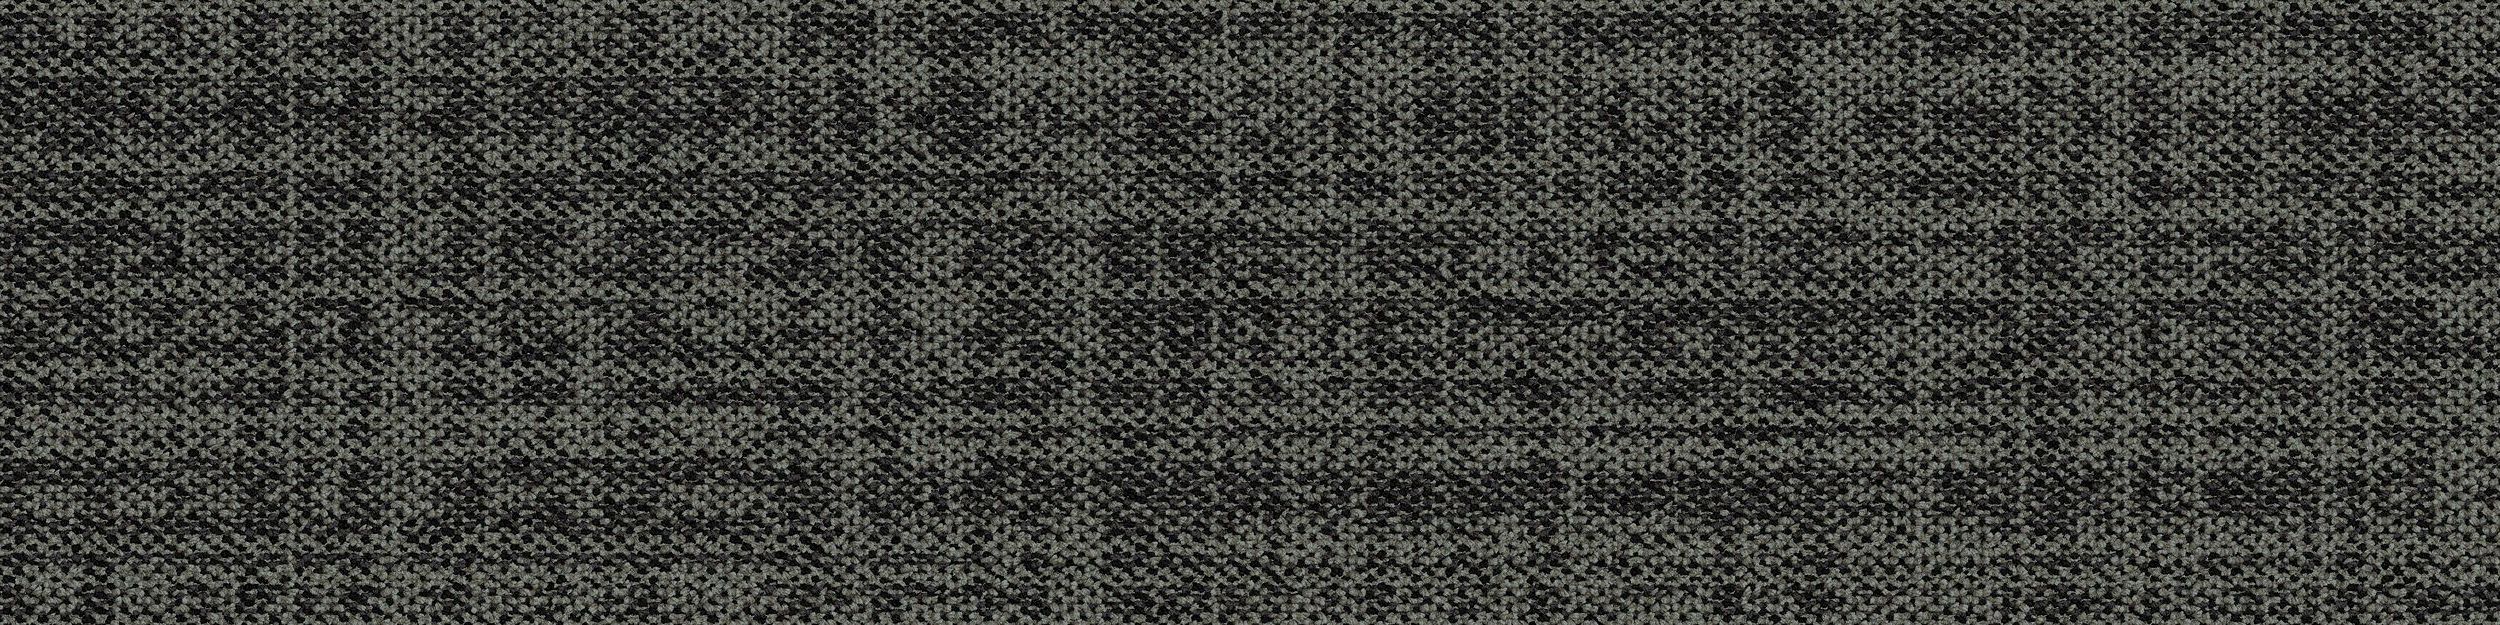 Source Material Carpet Tile In Iron numéro d’image 1